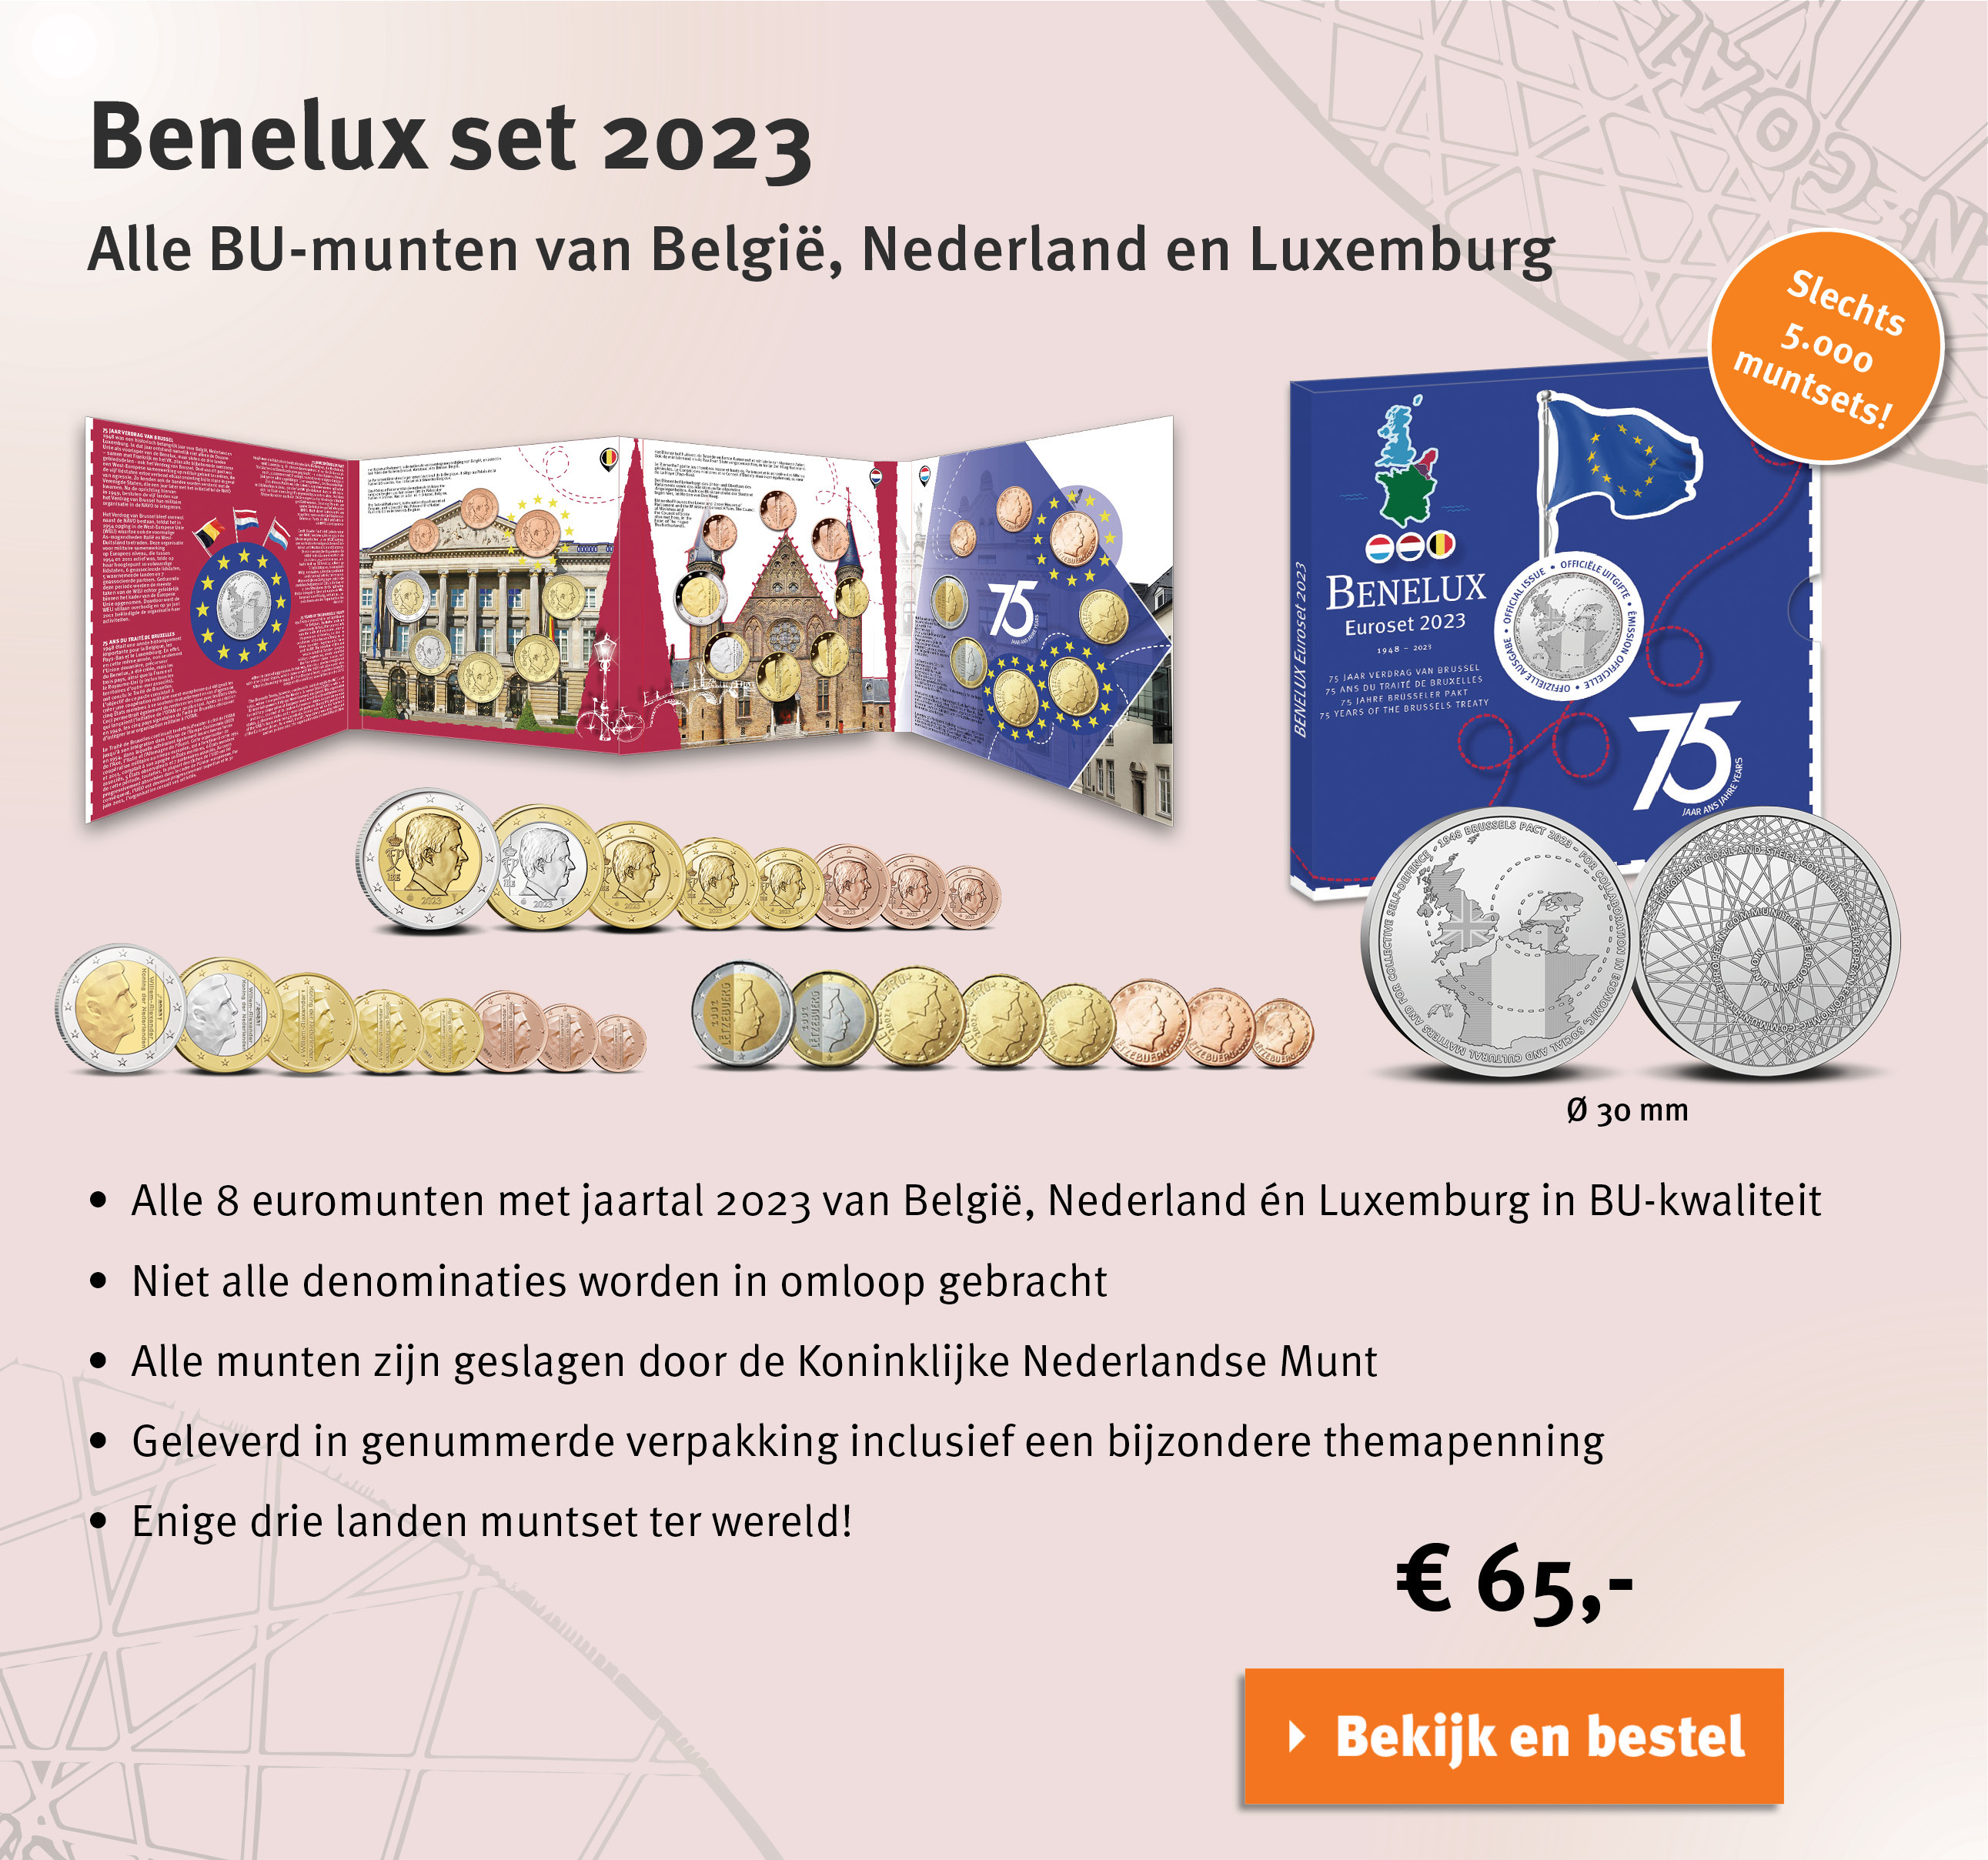 Bekijk en bestel: Benelux Set 2023